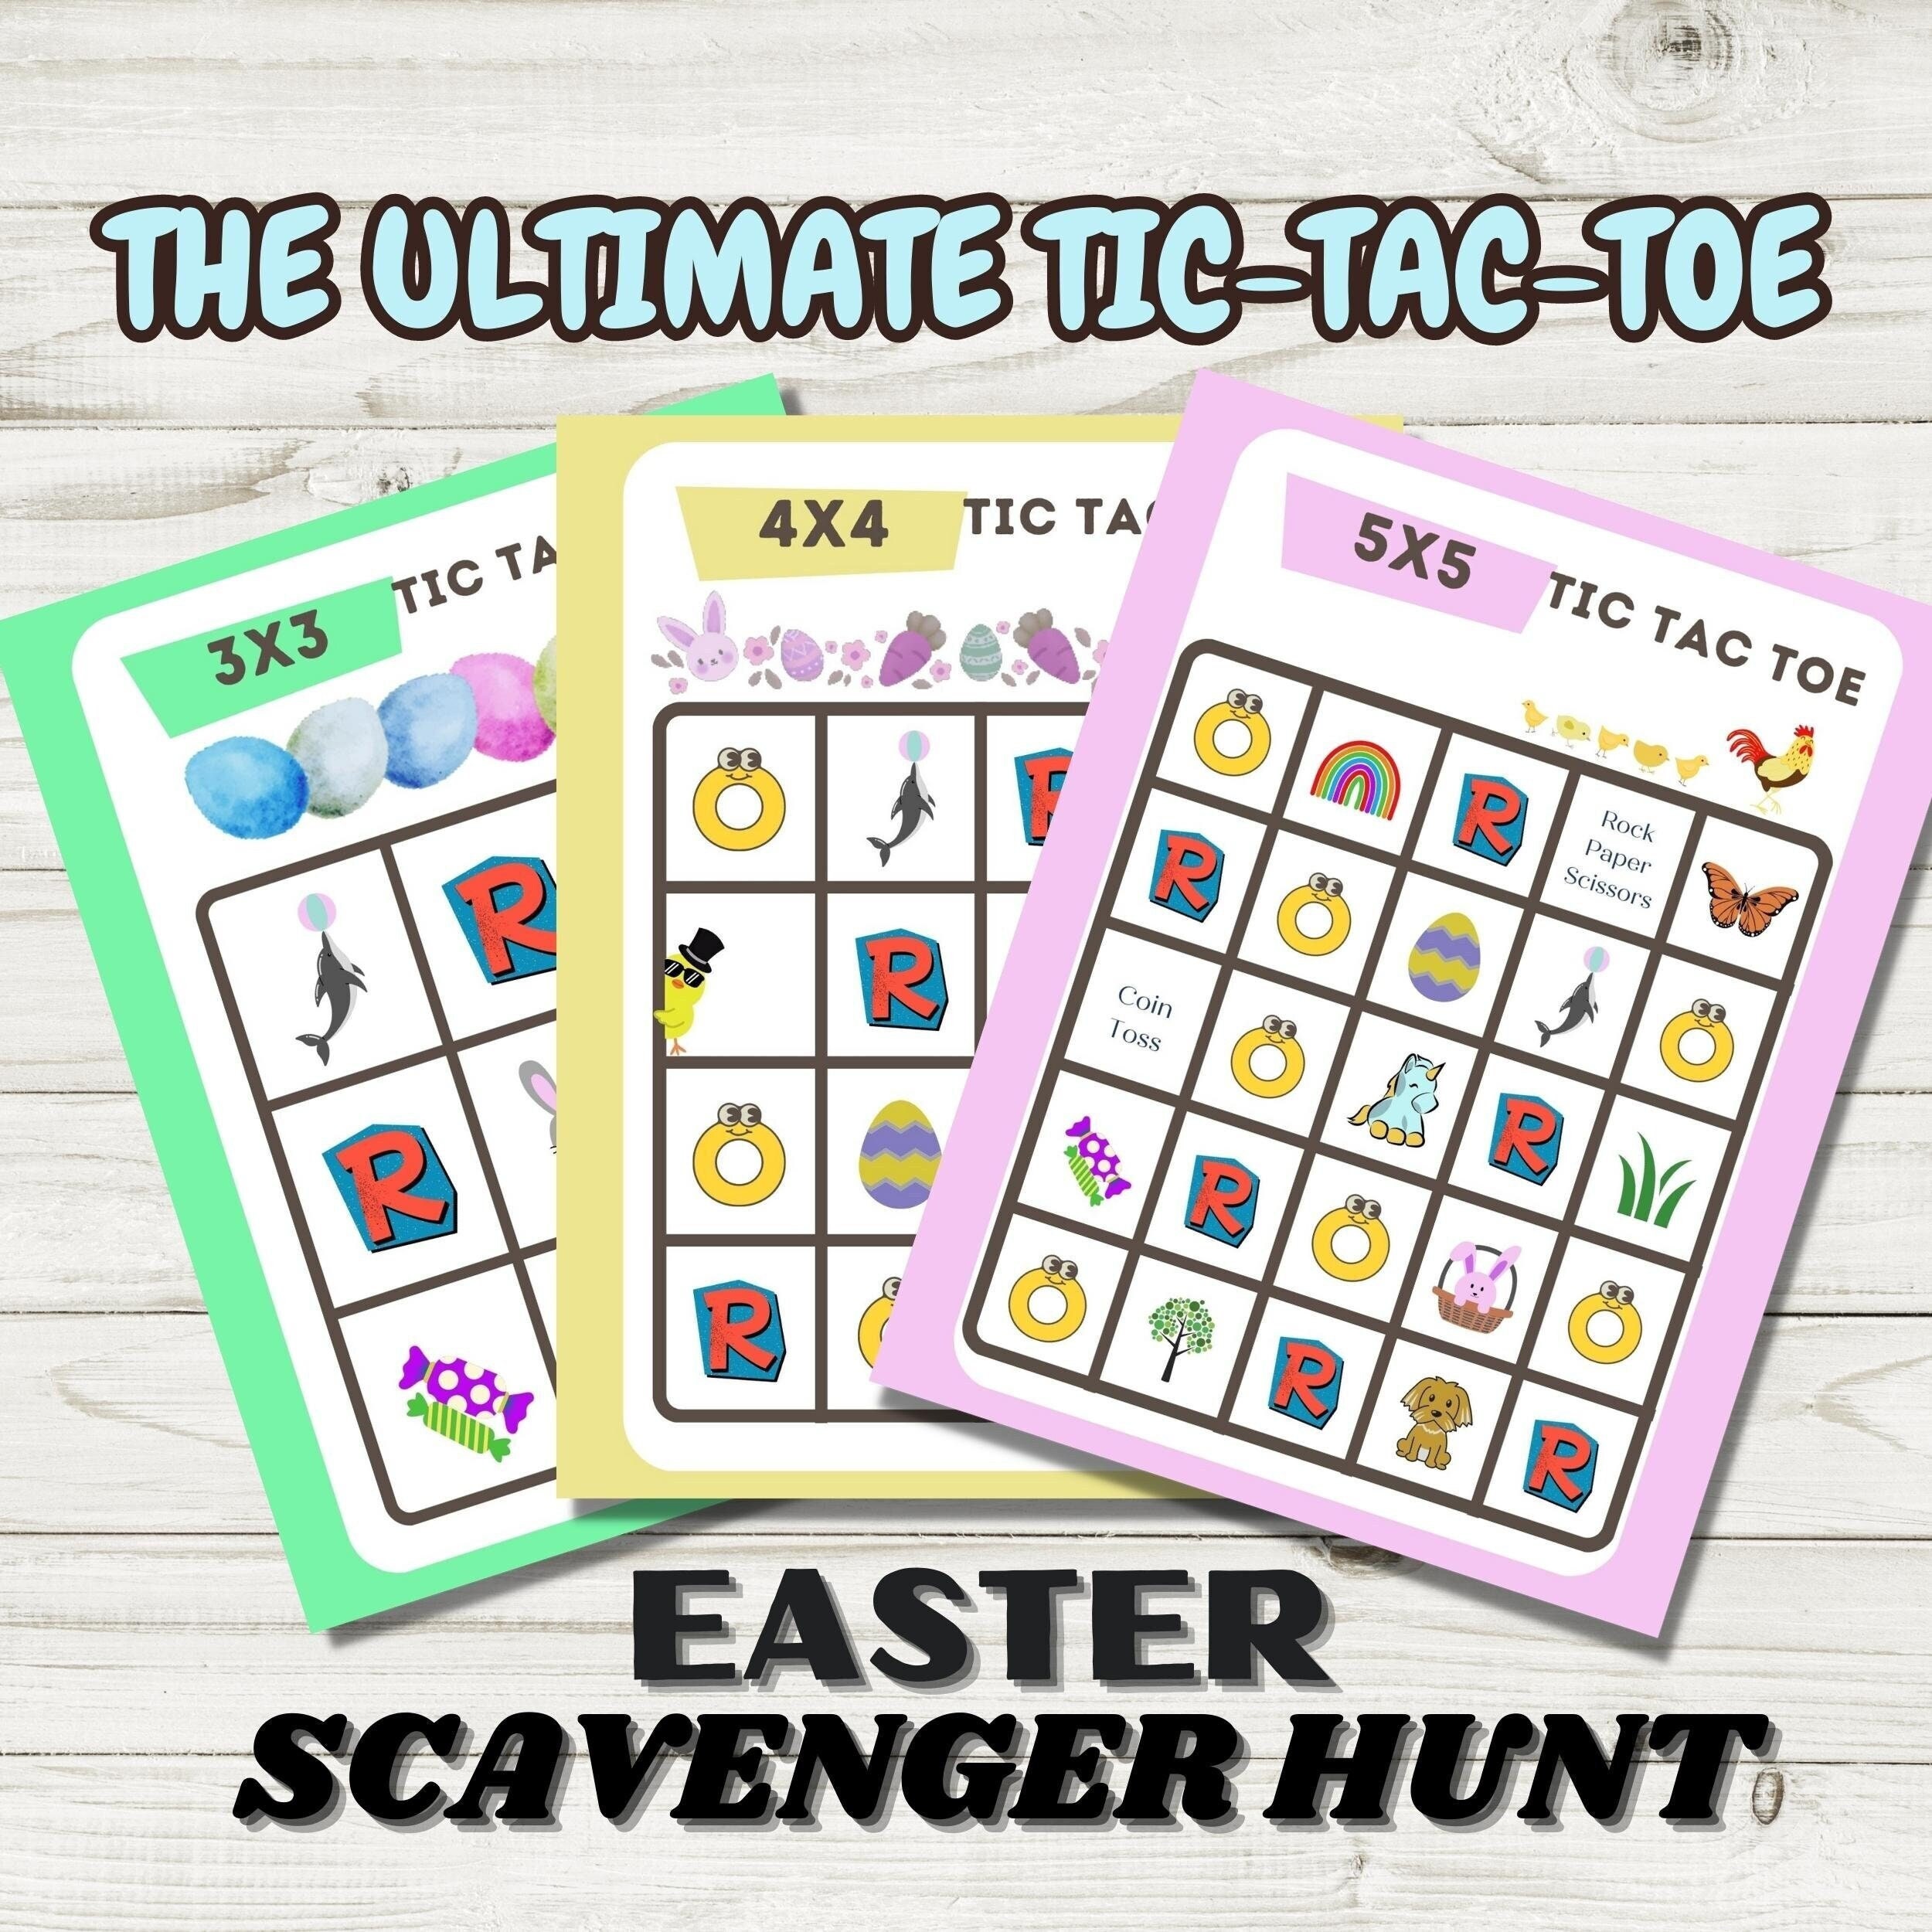 Tic-tac-toe Scavenger Hunt Easter Scavenger Hunt Indoor 